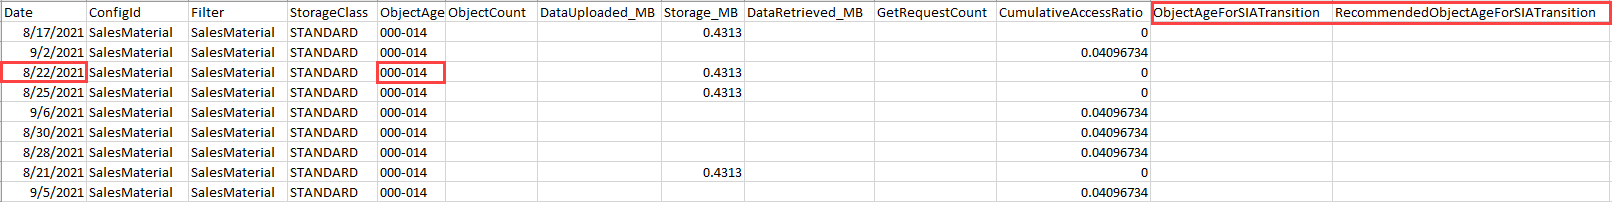 
        导出的存储类分析数据（在对象期限组内按日期排序）的屏幕截图。
      